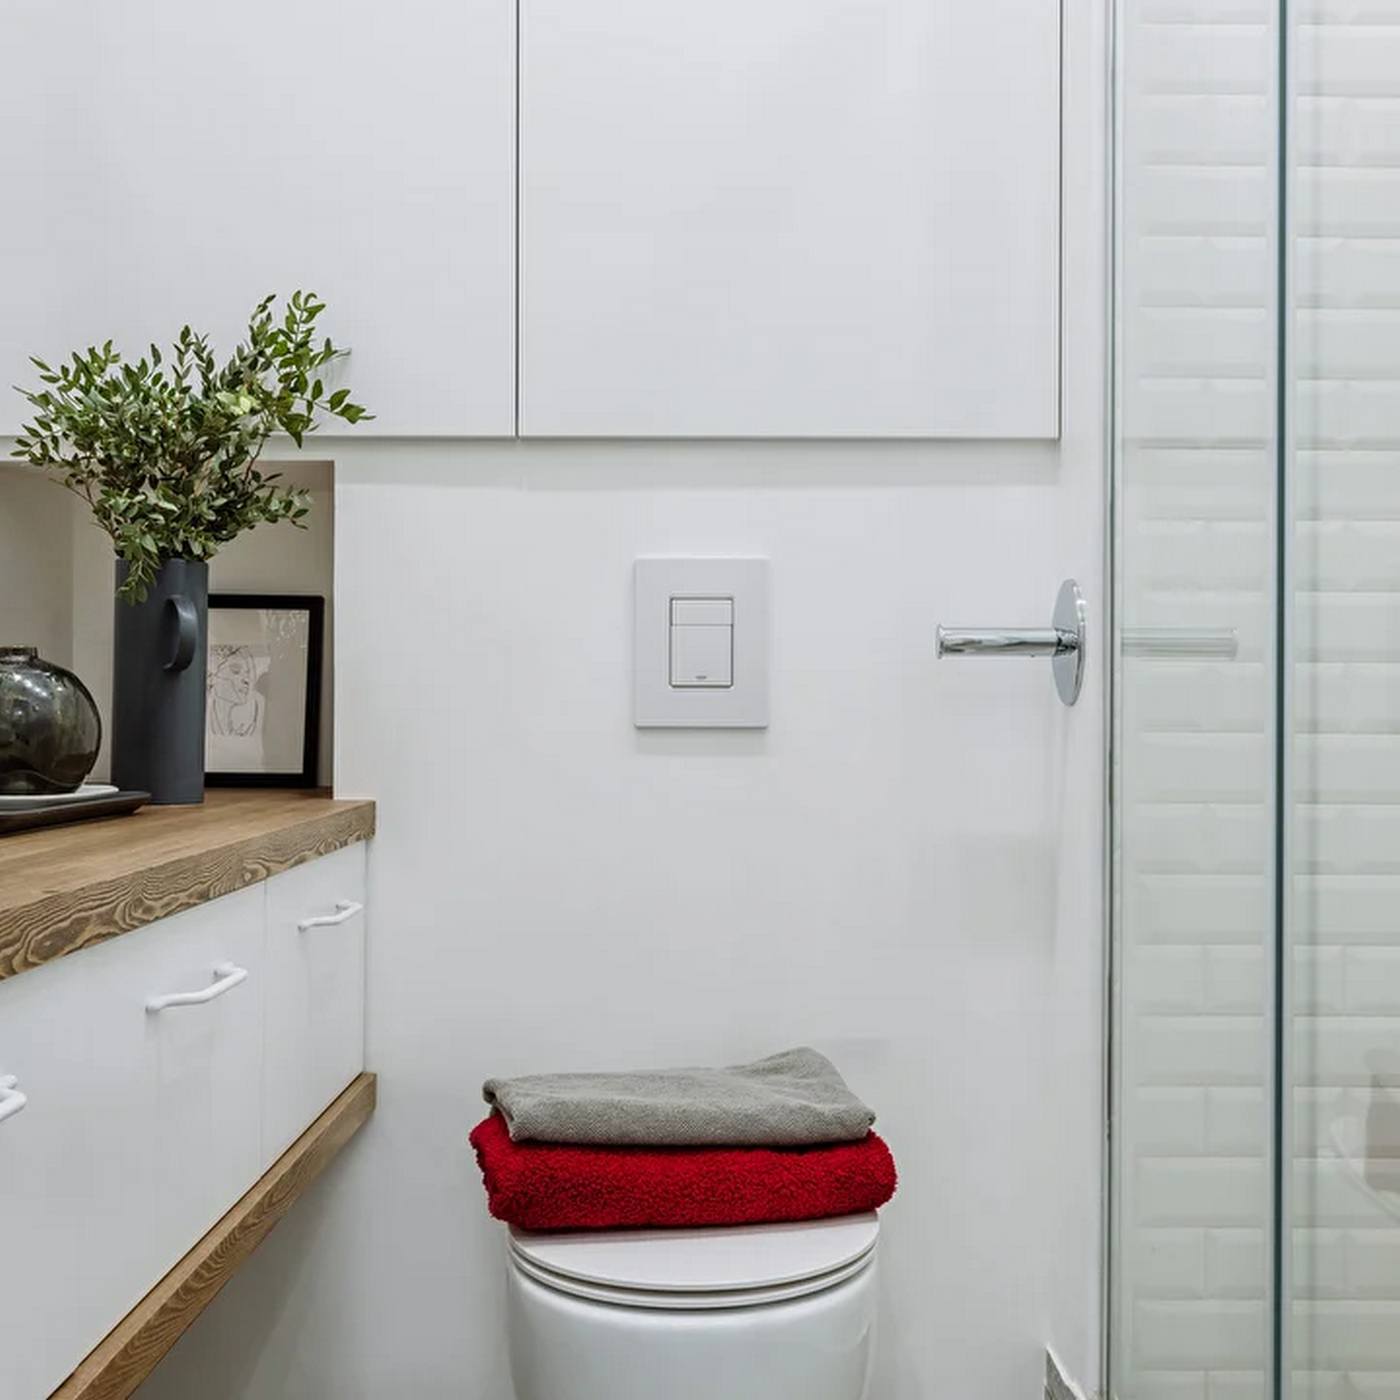 Phòng tắm nhỏ xinh với tủ lưu trữ và bồn toilet gắn tường để giải phóng diện tích sàn. Buồng tắm phân vùng với nhà vệ sinh bằng cửa kính trong suốt.